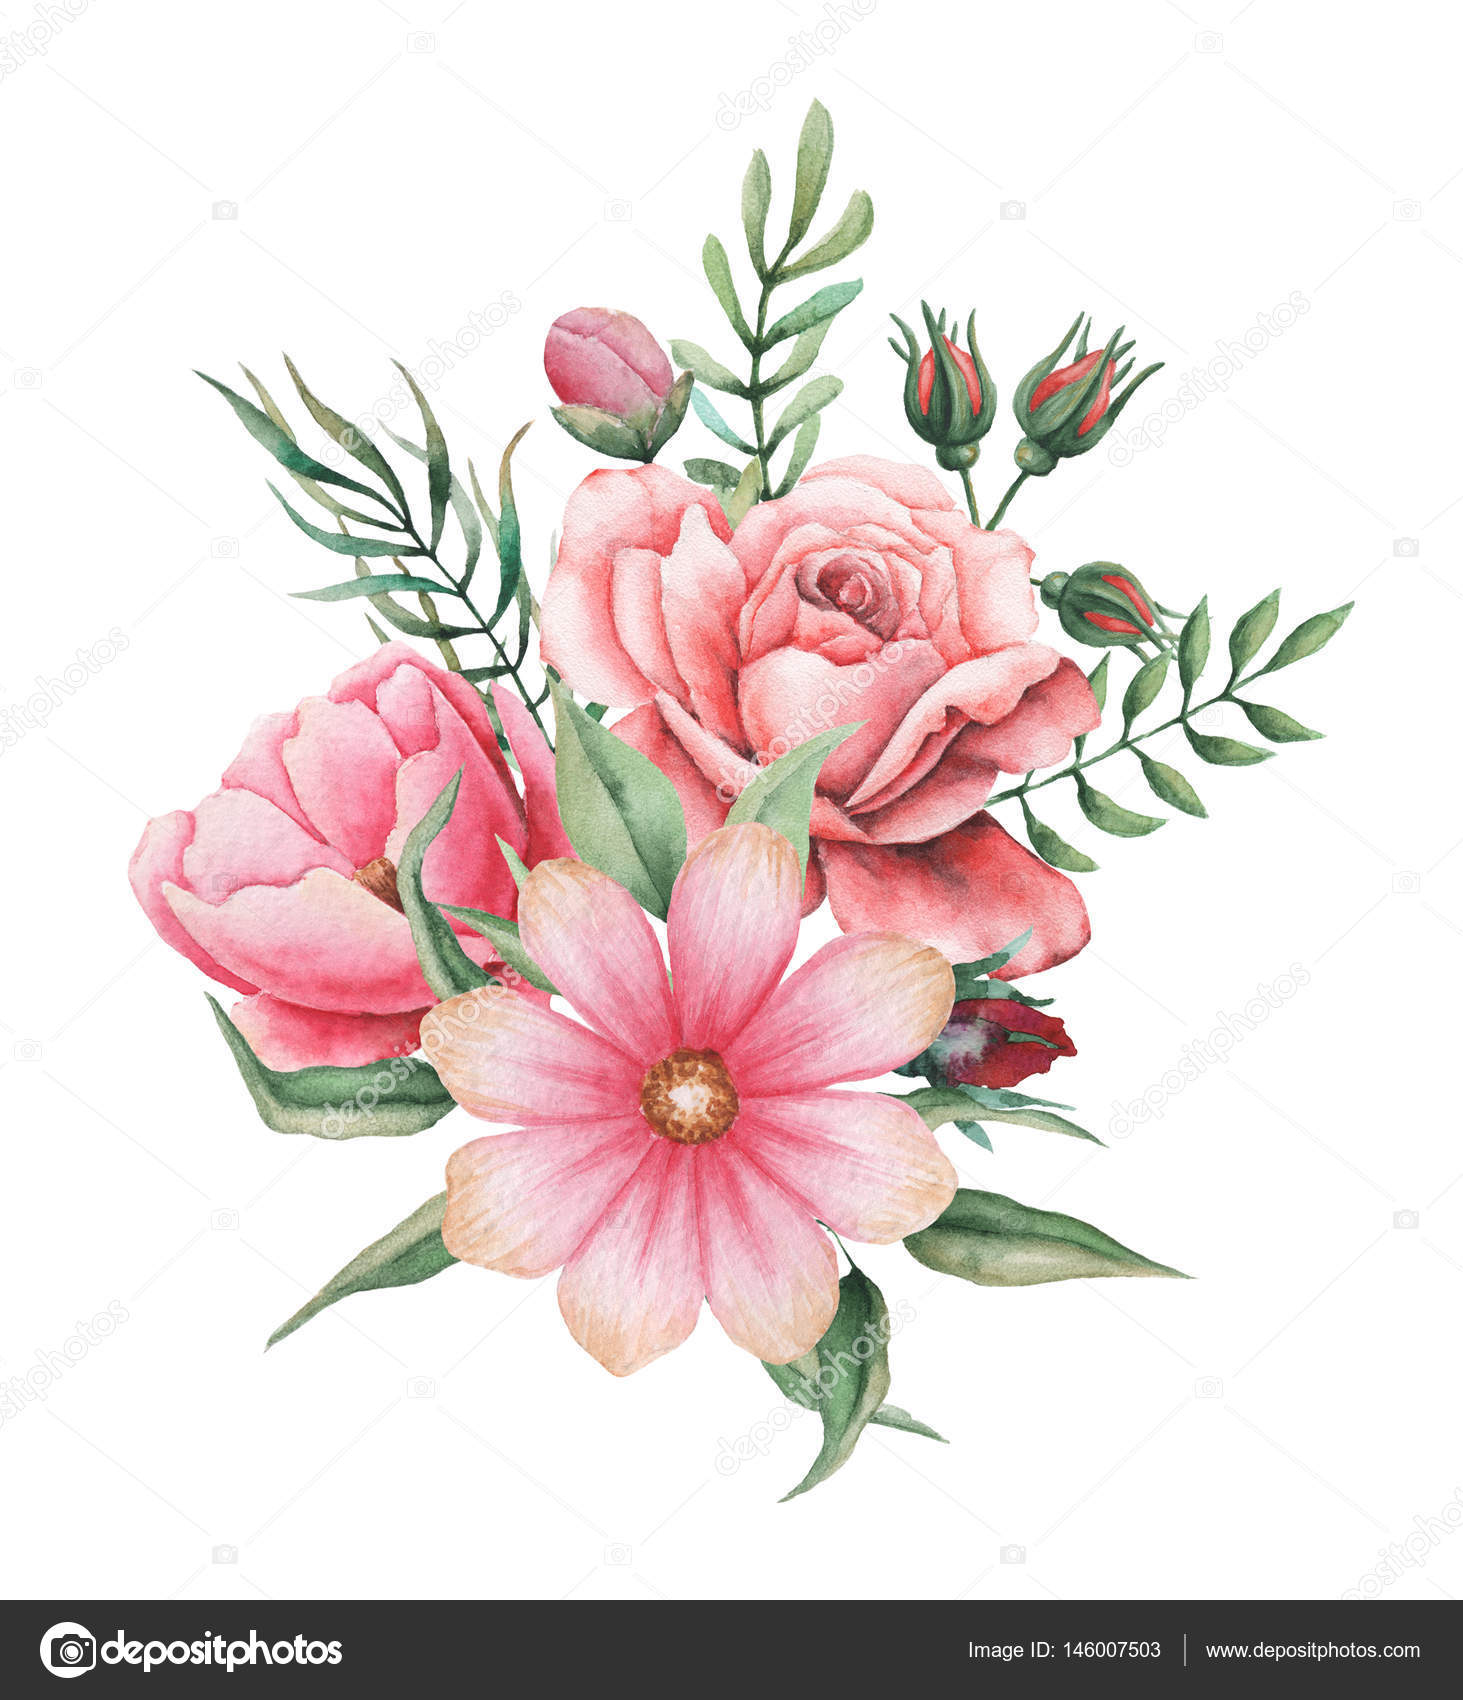 Disegno Mazzo Di Fiori.Watercolor Invitation Design With Bouquet Of Flowers Hand Painted